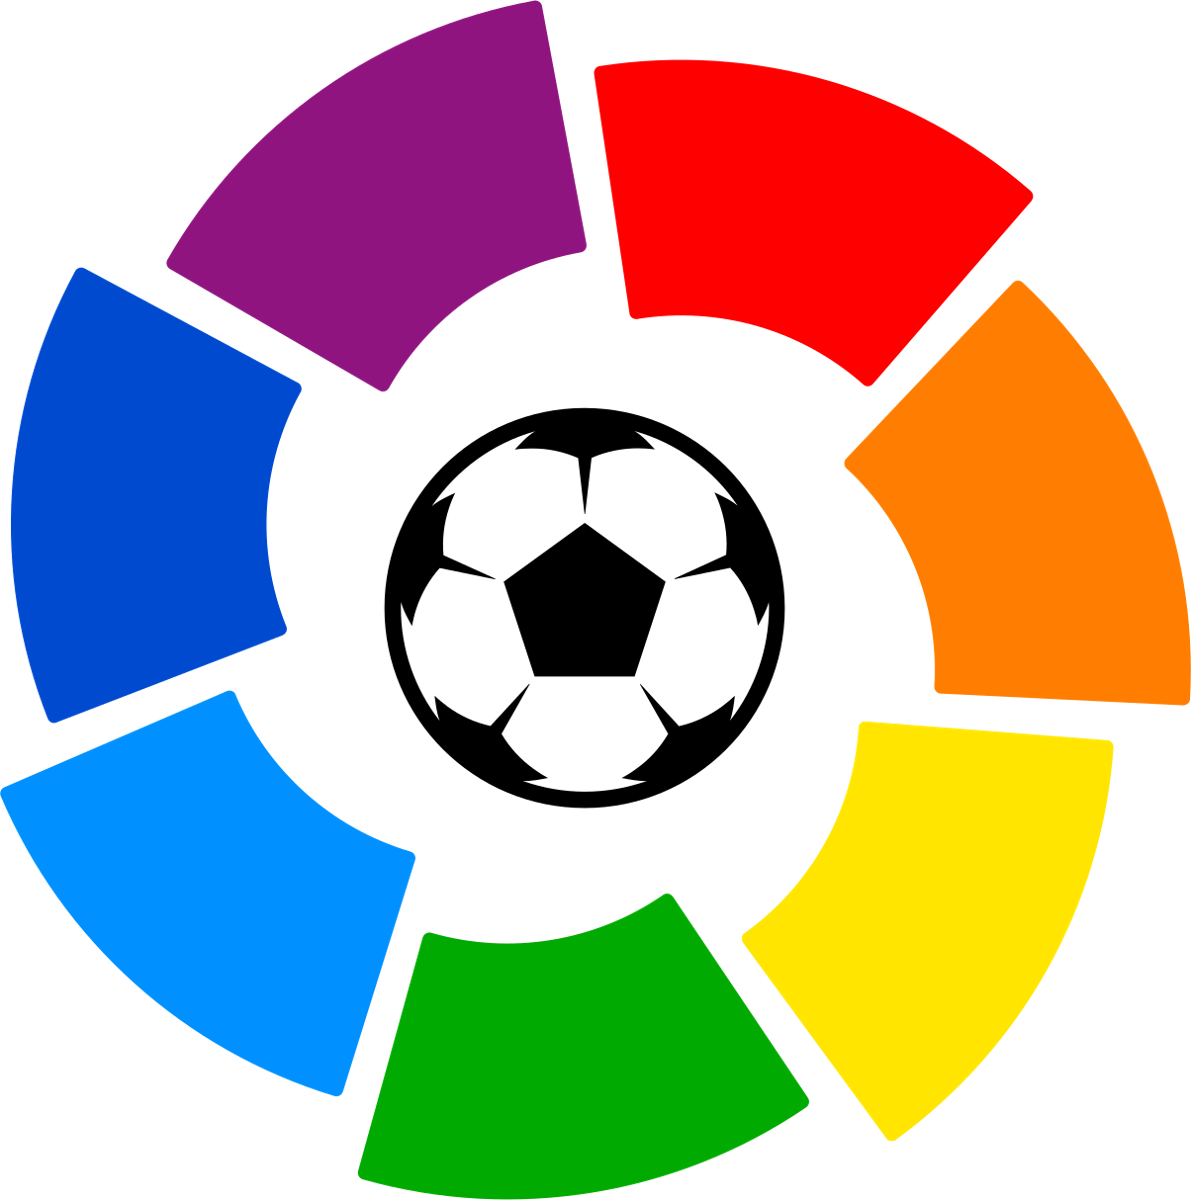 Football Logos La Liga + Segunda División